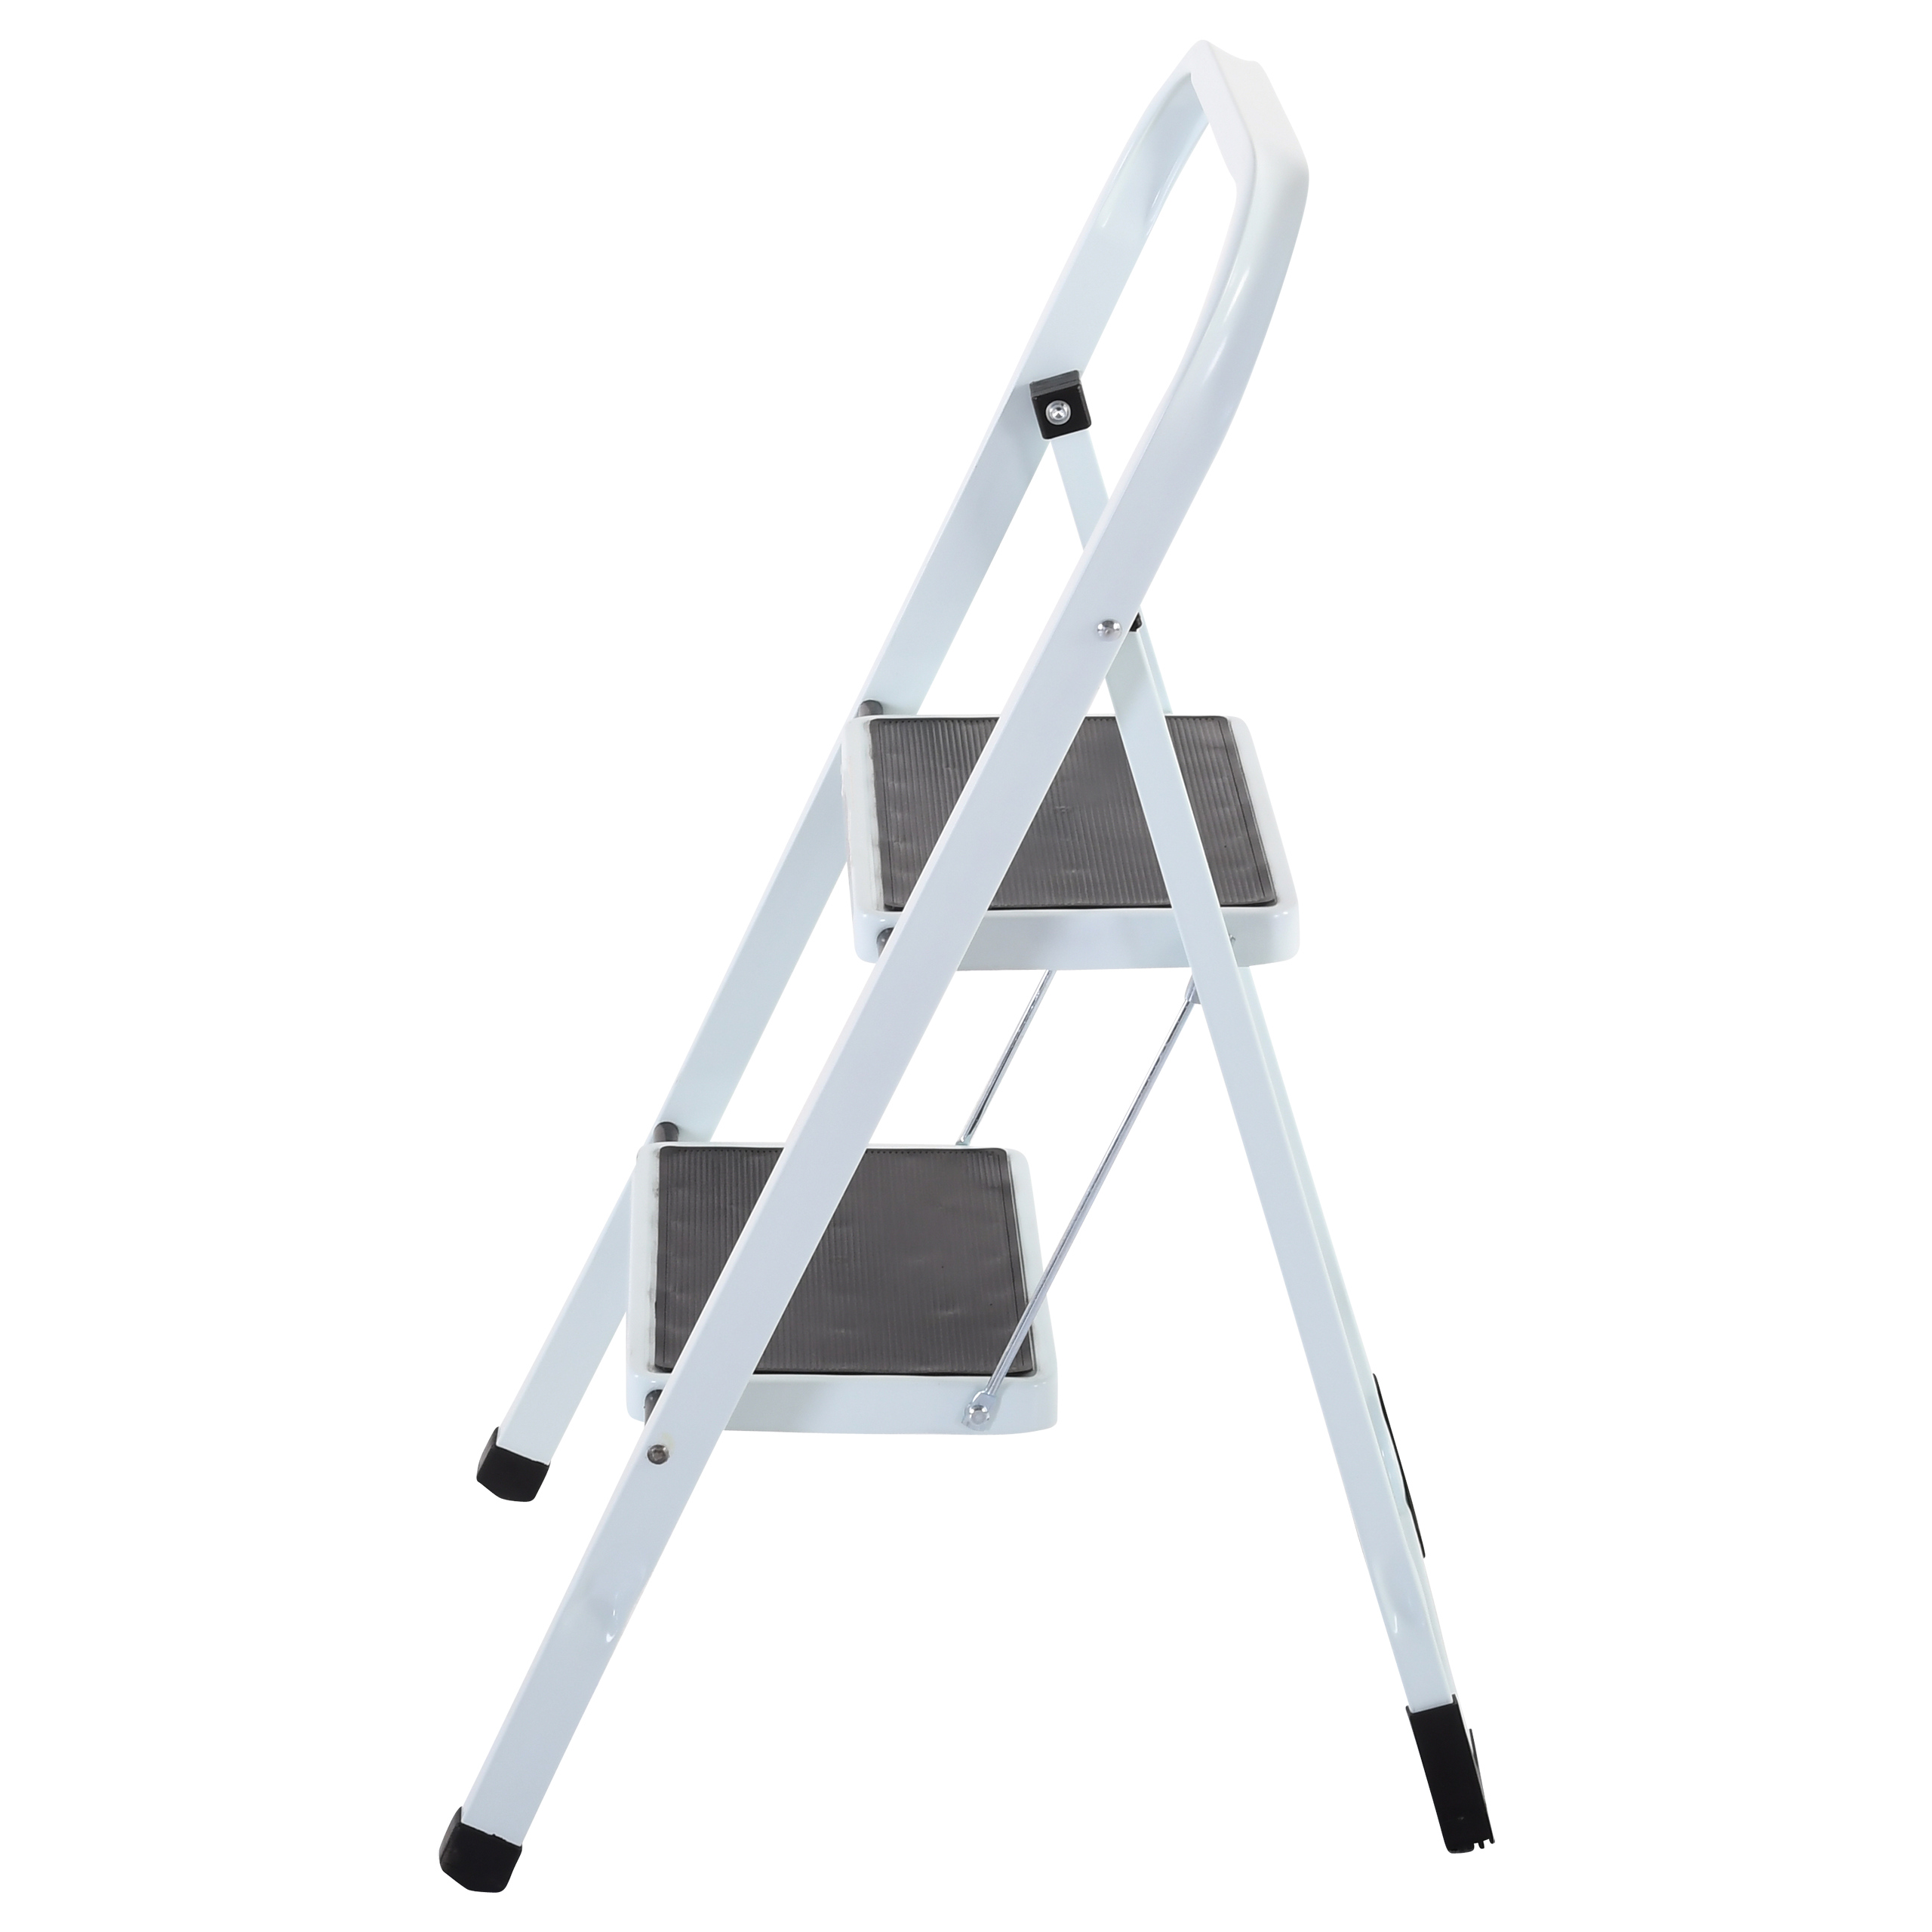 Raburg Stahl-Klapptritt-Leiter Step Klein, 2 Stufen, Stahl in Weiß, kompakt klappbar - 45,5 cm hoch